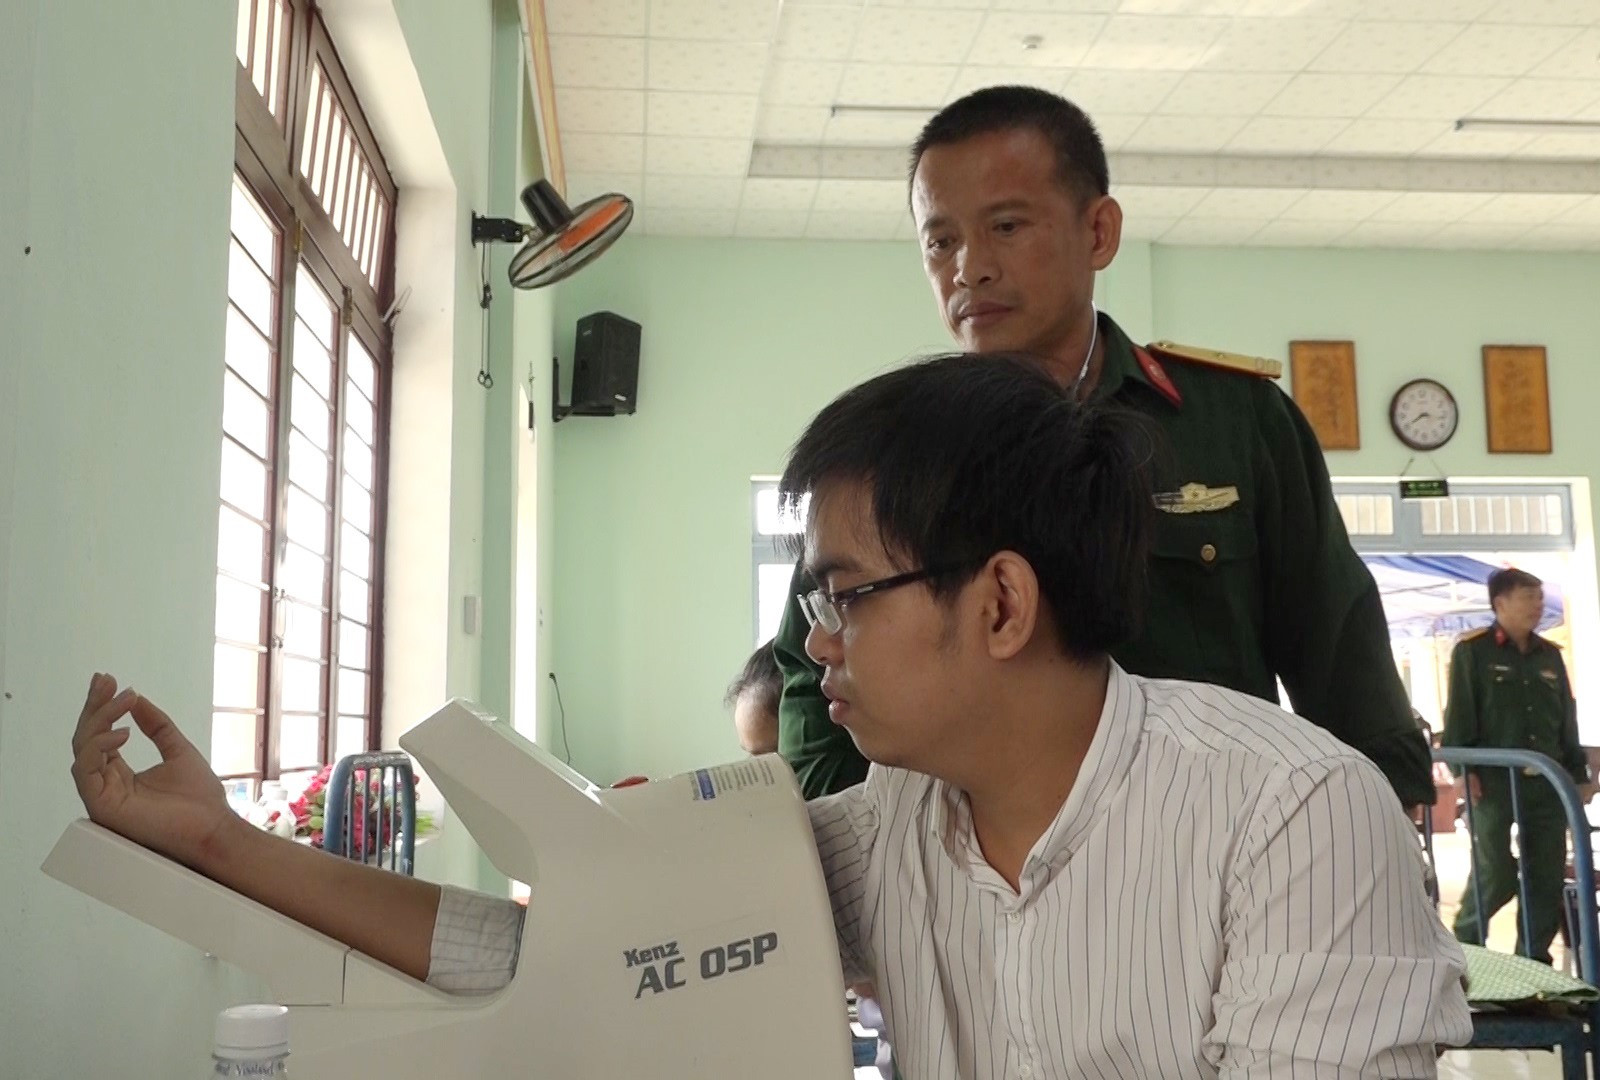 Thiếu tá Lê Văn Đào khám sức khỏe nghĩa vụ quân sự cho thanh niên năm 2020. Ảnh: V.T